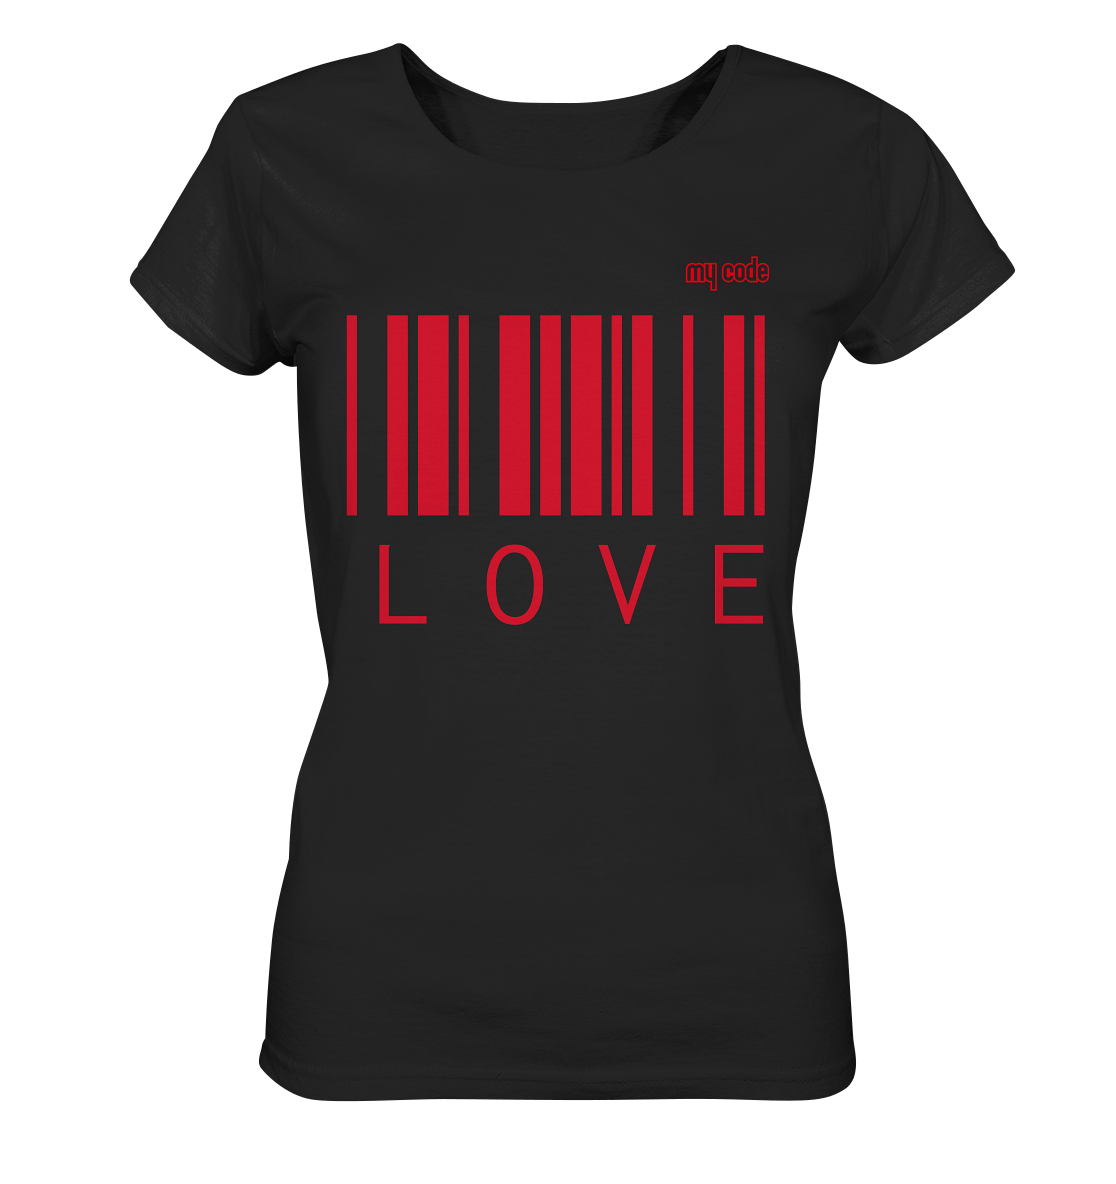 My code Love Statement t shirt in schwarz damen statement love 